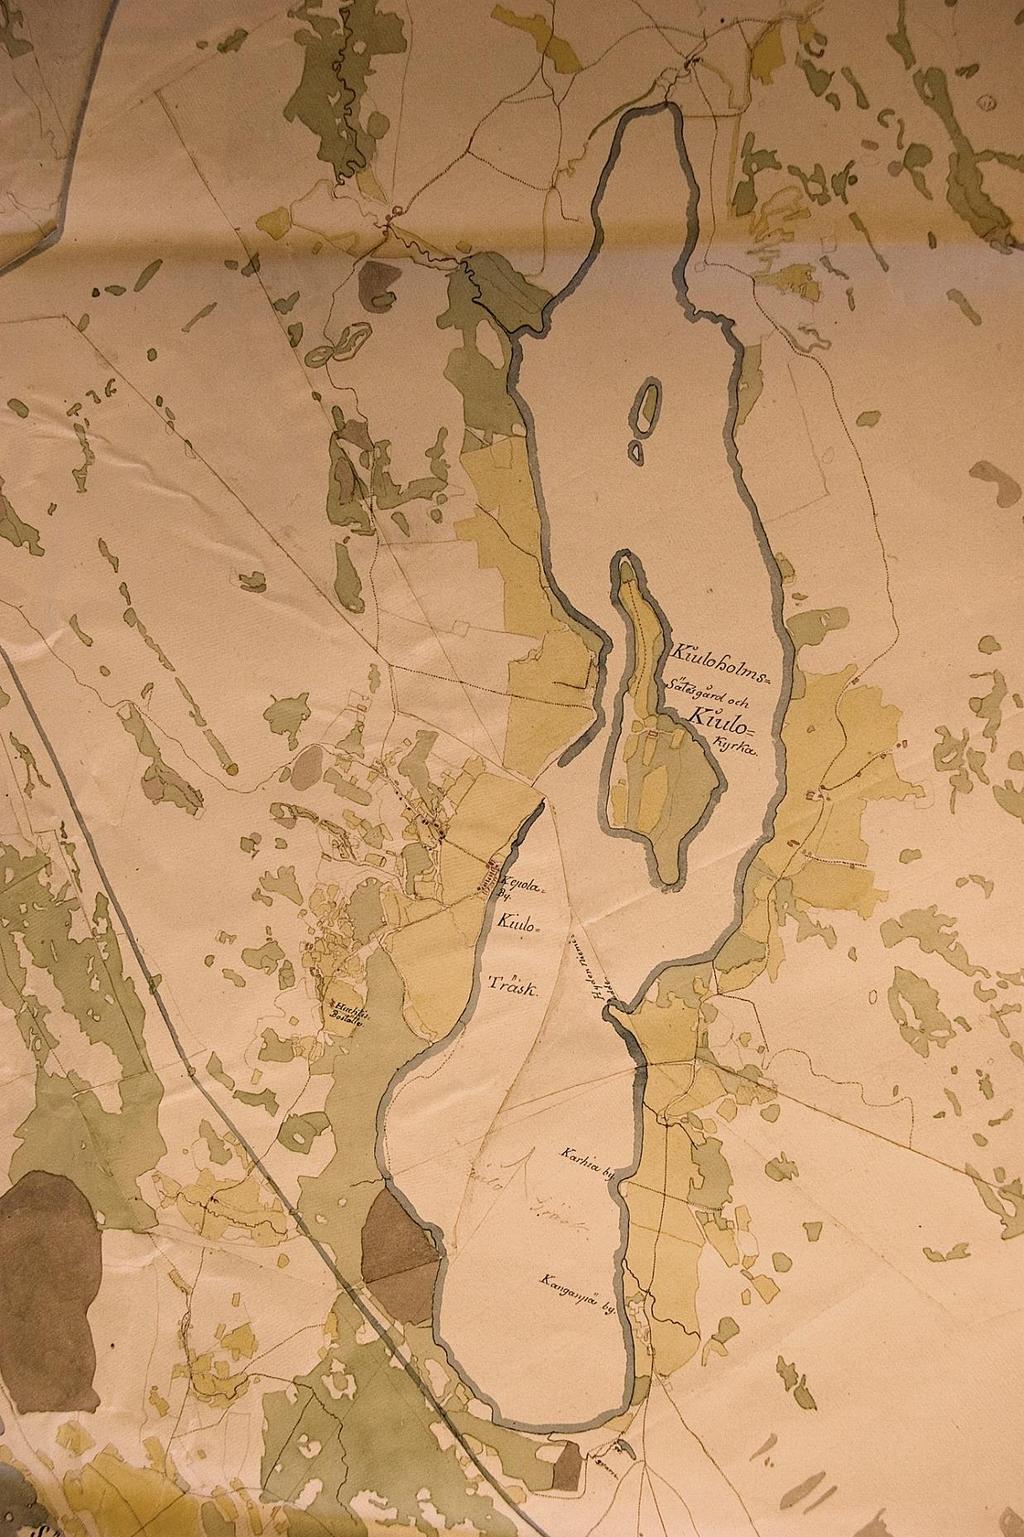 Köyliönjärven ympäristöä 1700-luvun sotilaskartassa, jossa pellot